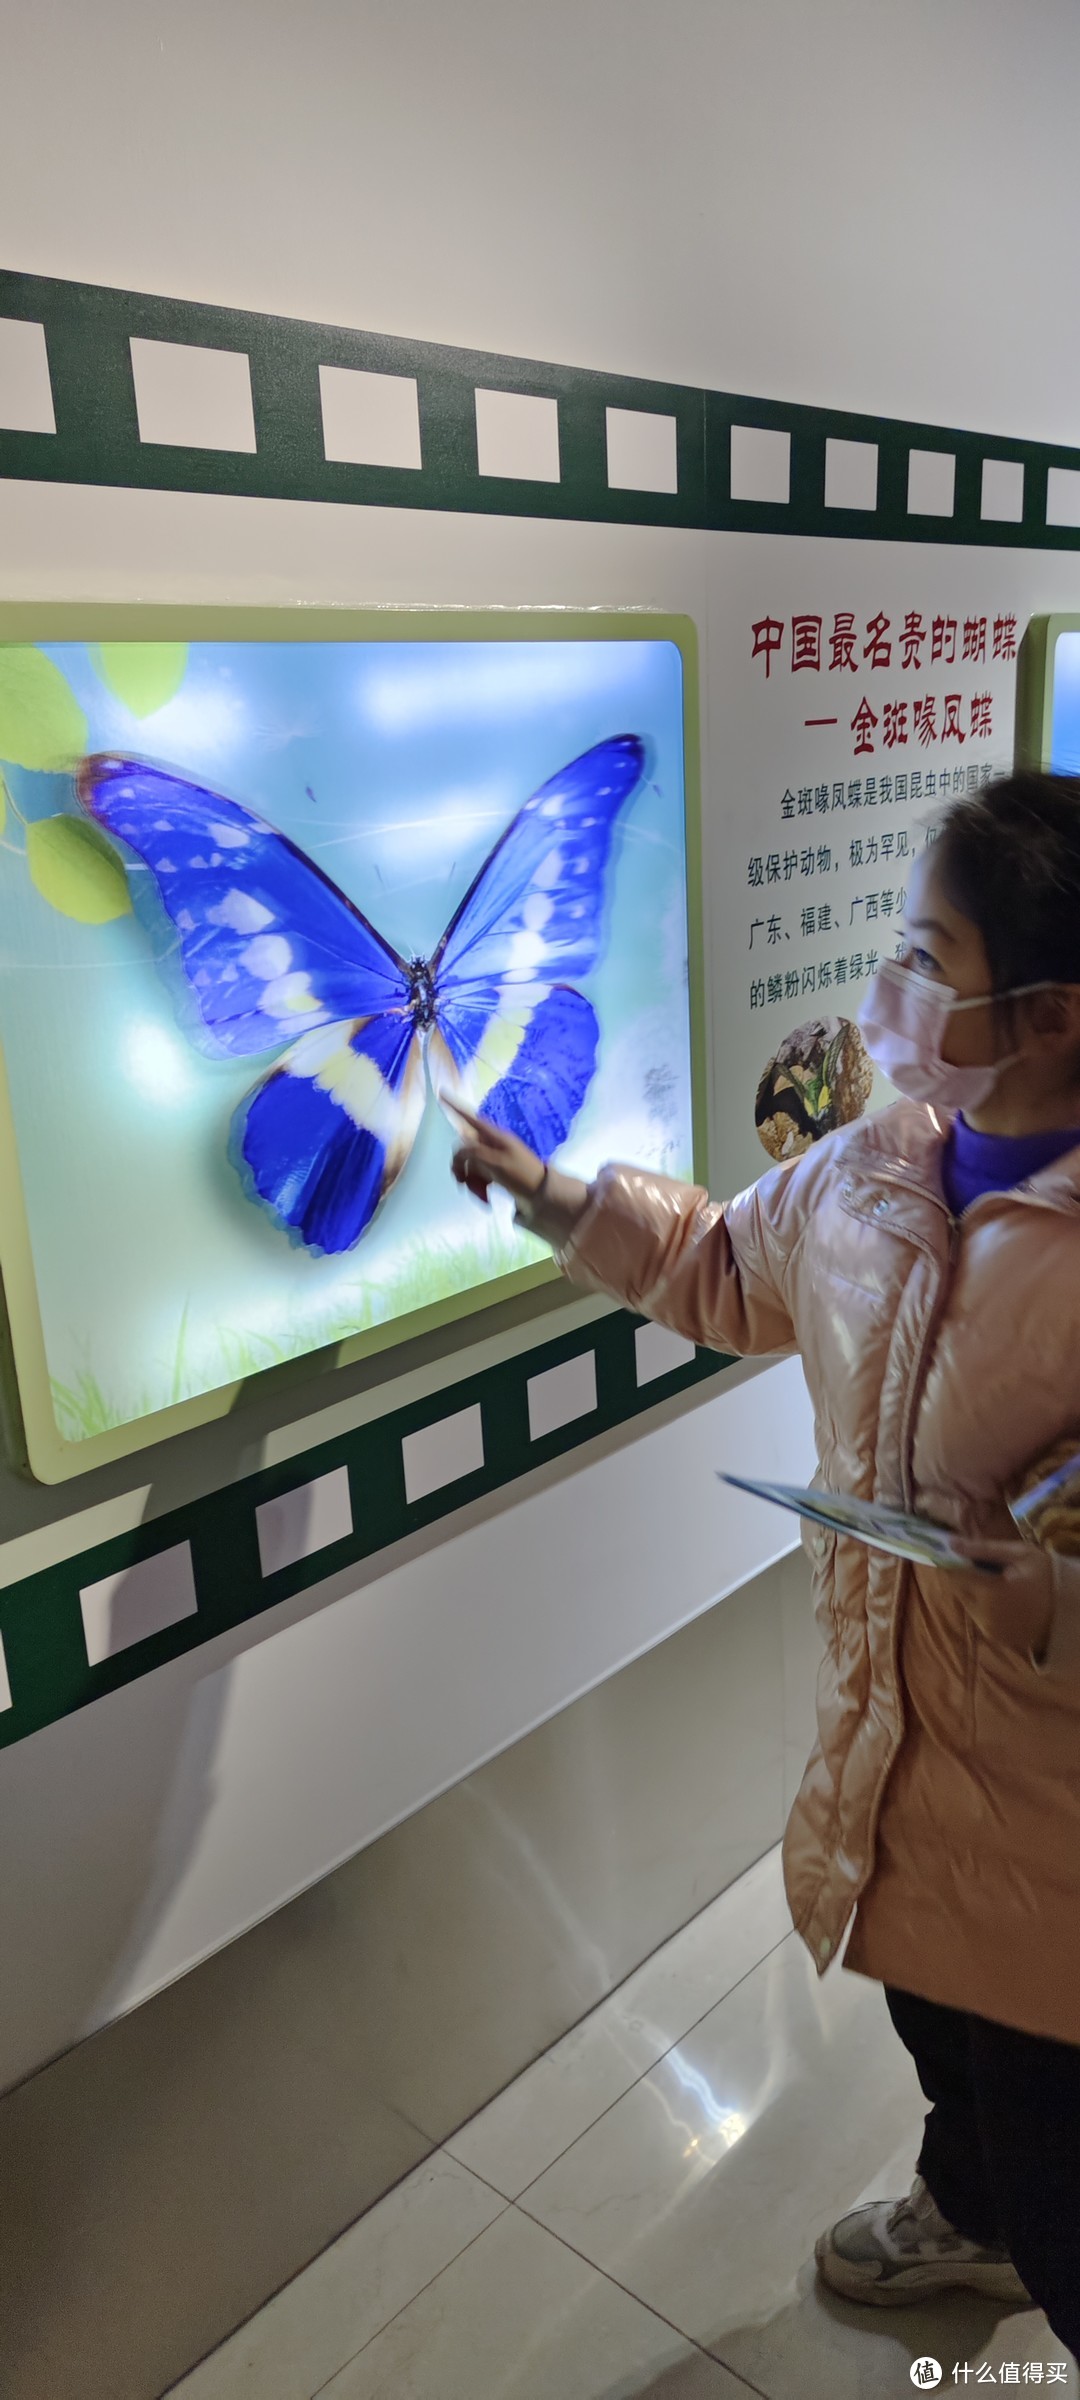 上海中科院上海昆虫博物馆开馆首日/第1天就过来了/上海市科普教育基地、全国青少年走进科学